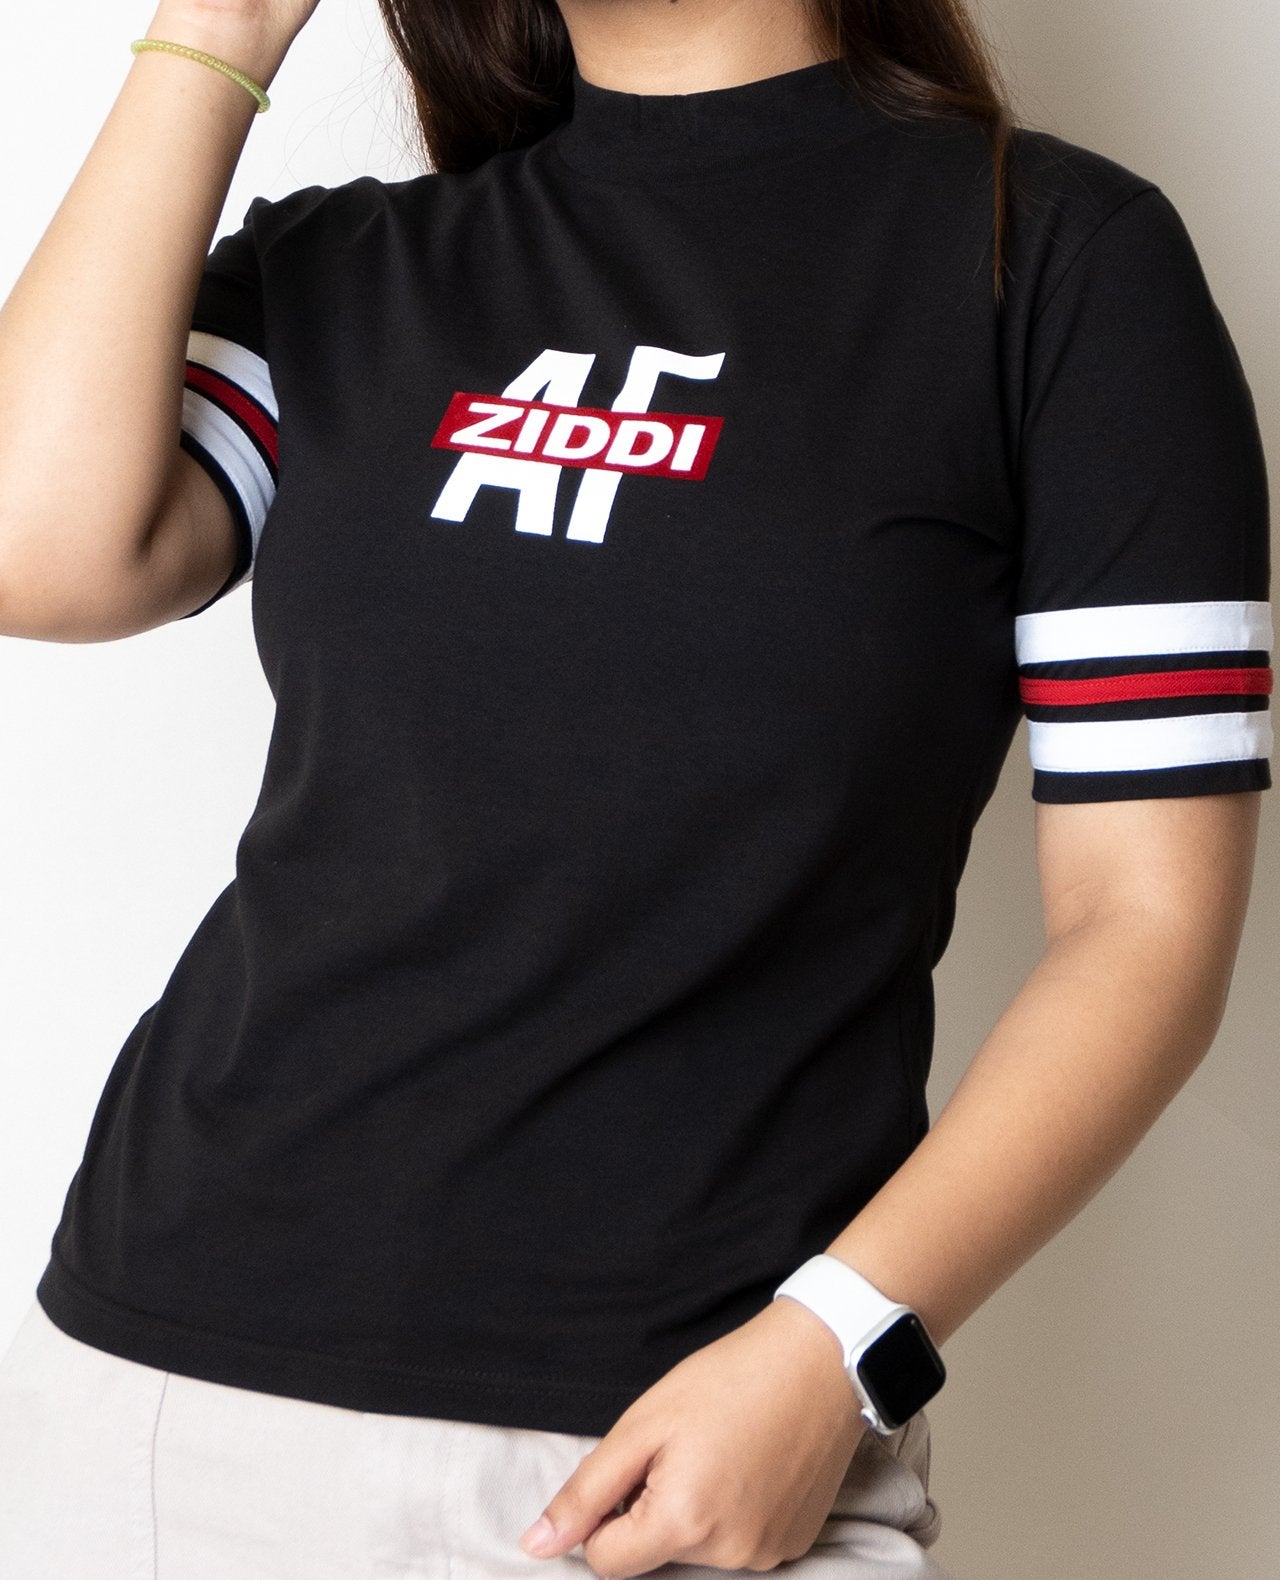 Ziddi AF Women's T-Shirt